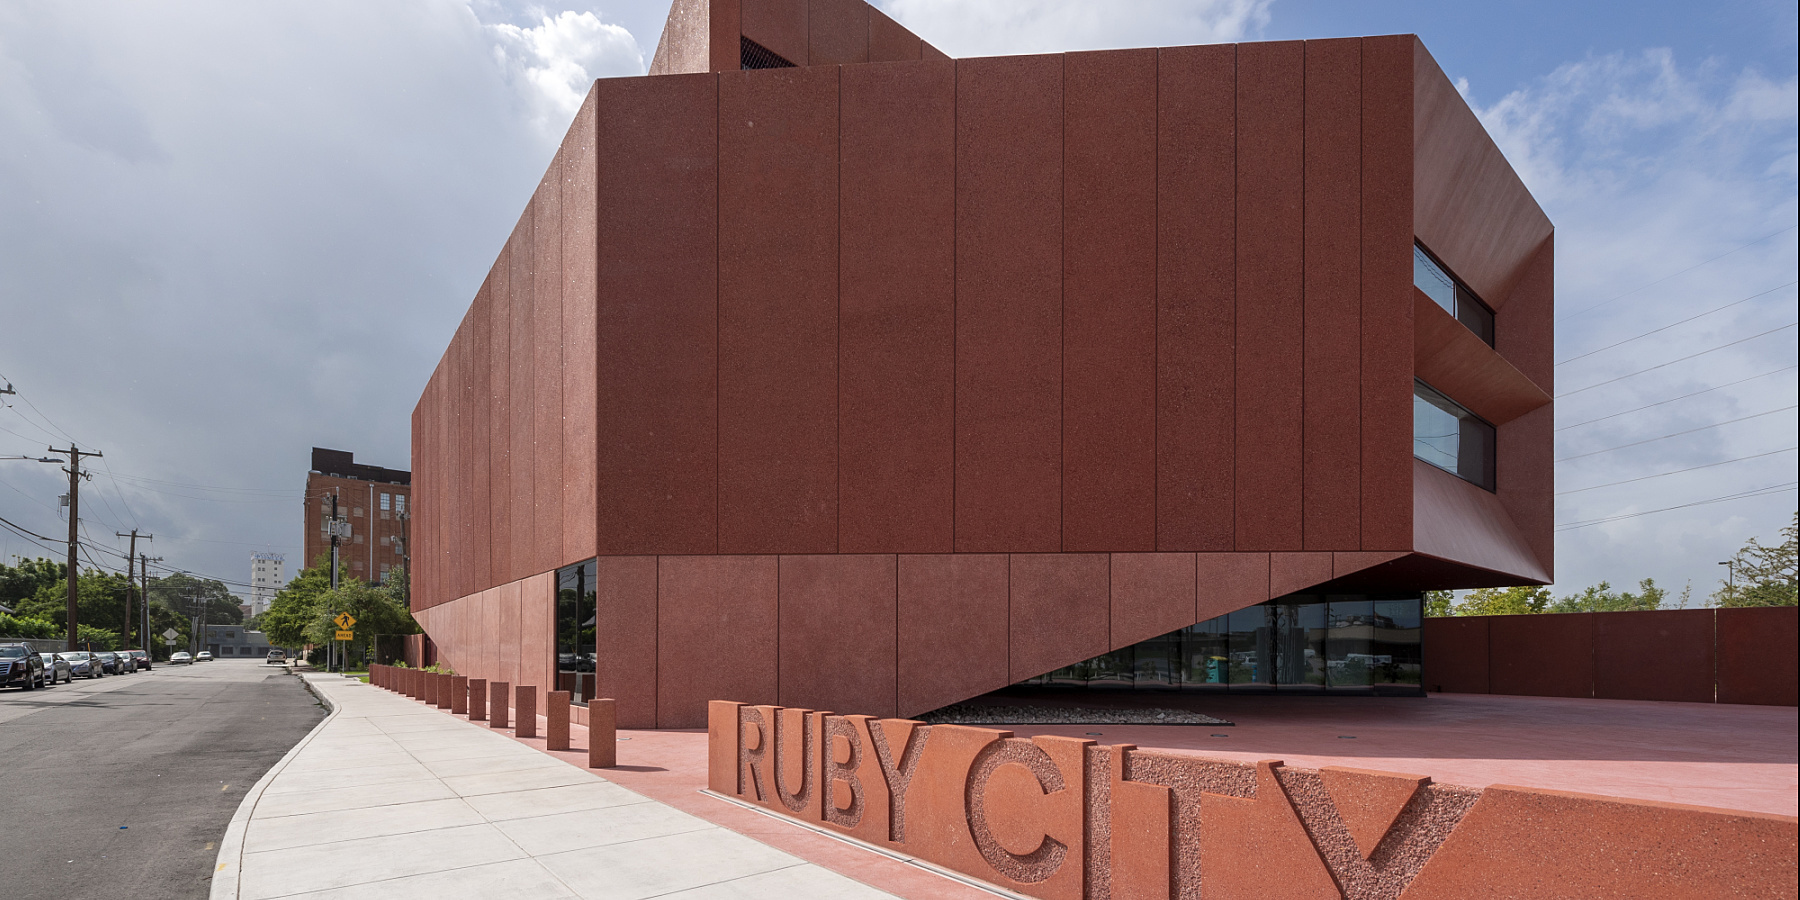 Nieuw licht van ERCO voor de Ruby City Galerie in Texas, San Antonio, Verenigde Staten